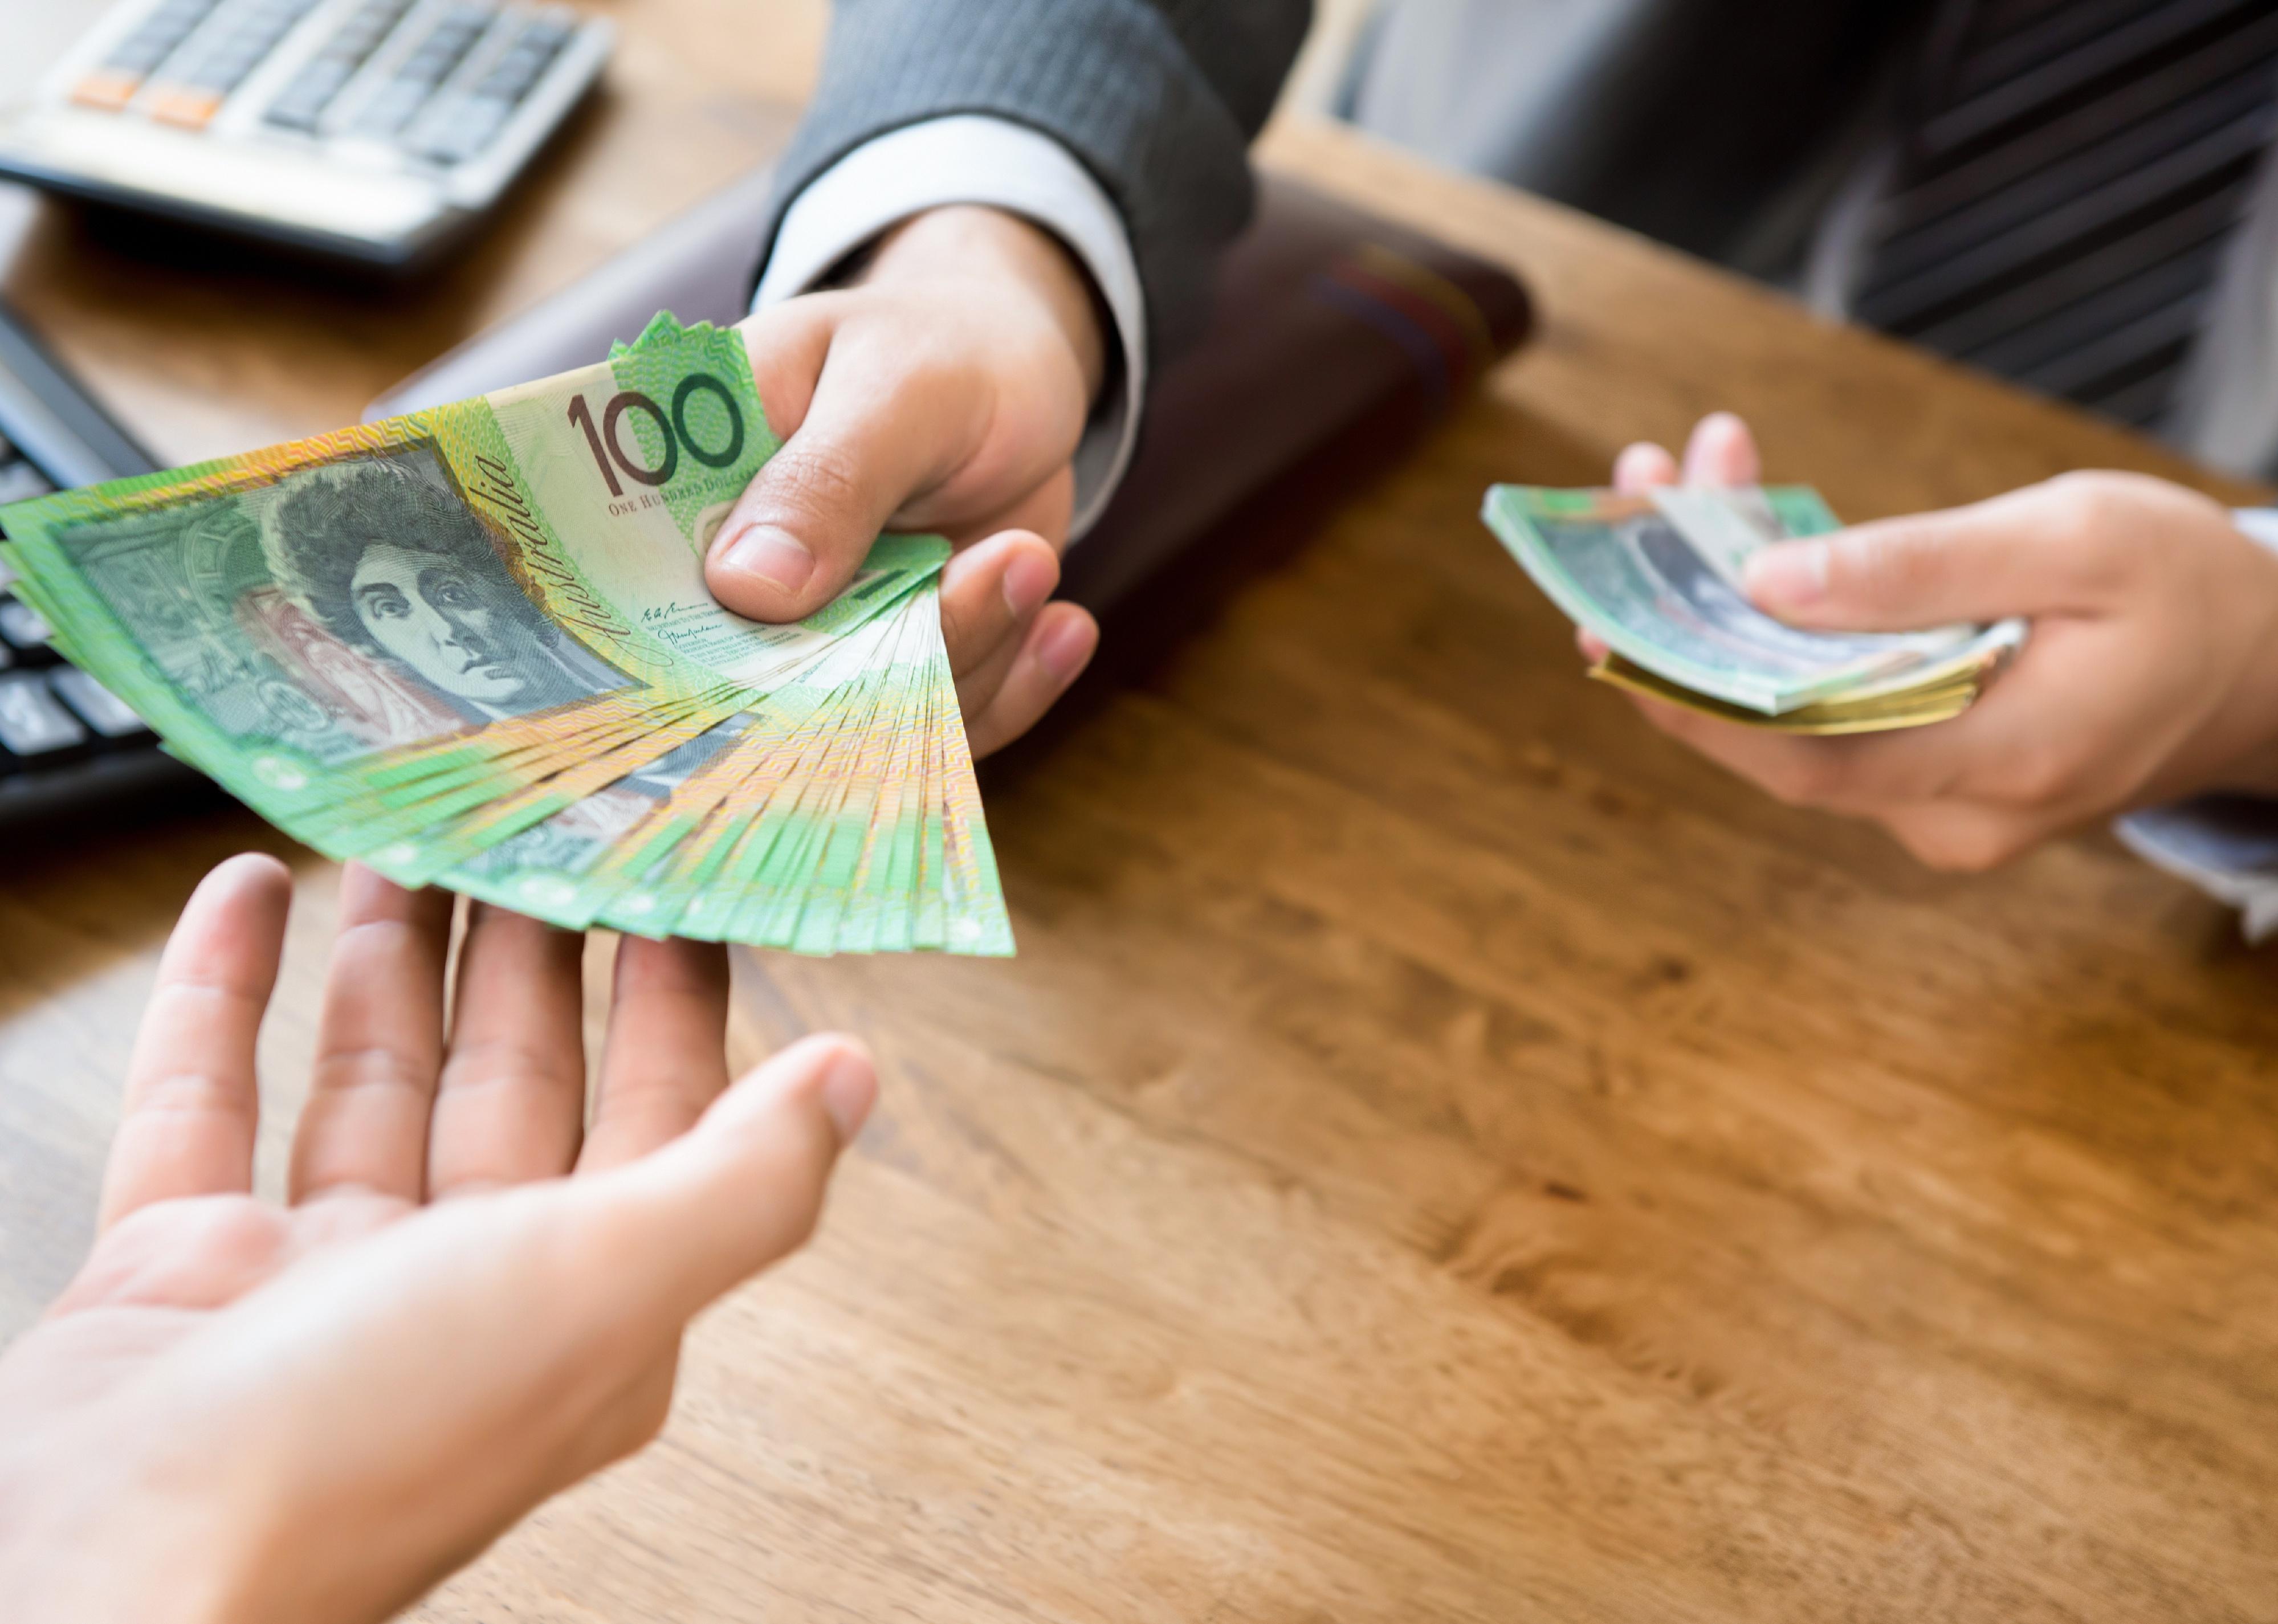 Hands handing over Australian Dollars